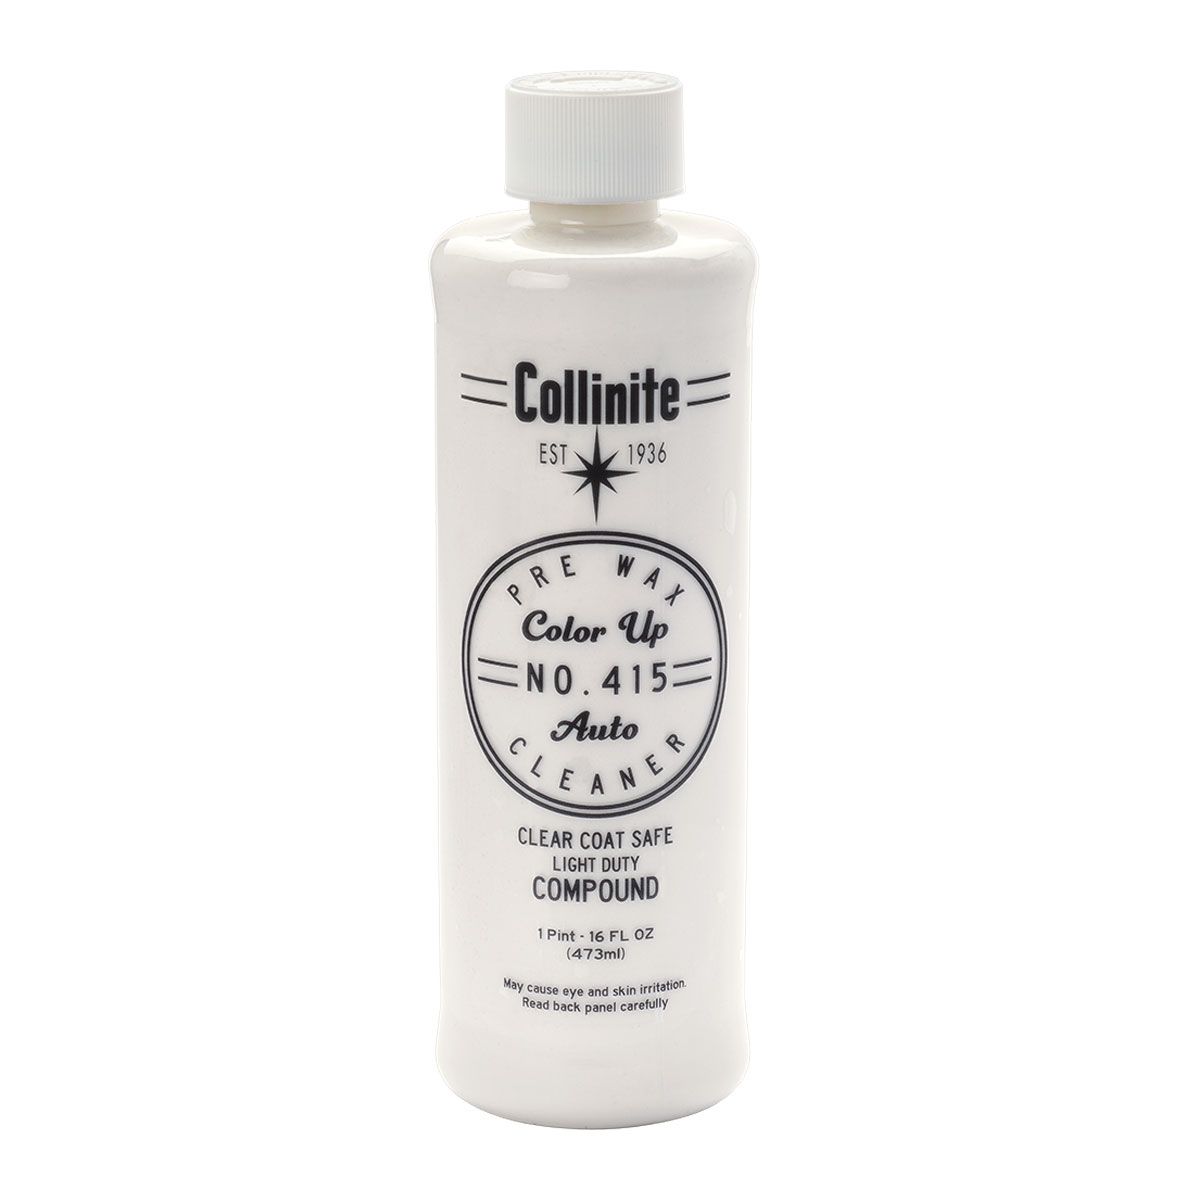 Collinite Pre-Wax Cleaner 415